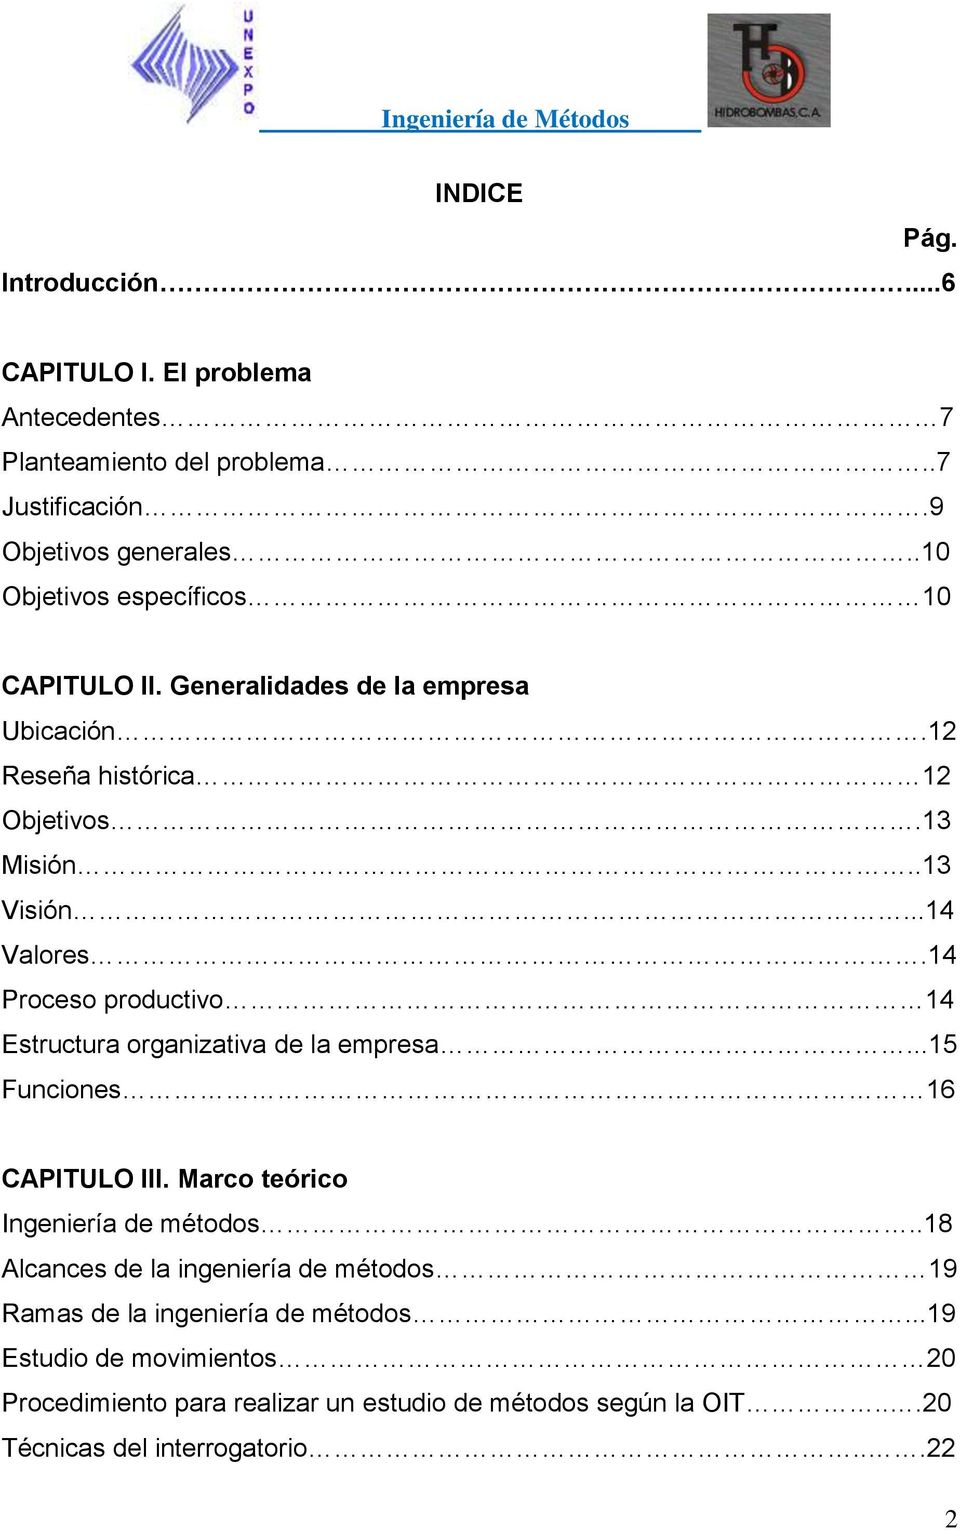 14 Proceso productivo 14 Estructura organizativa de la empresa...15 Funciones 16 CAPITULO III. Marco teórico Ingeniería de métodos.